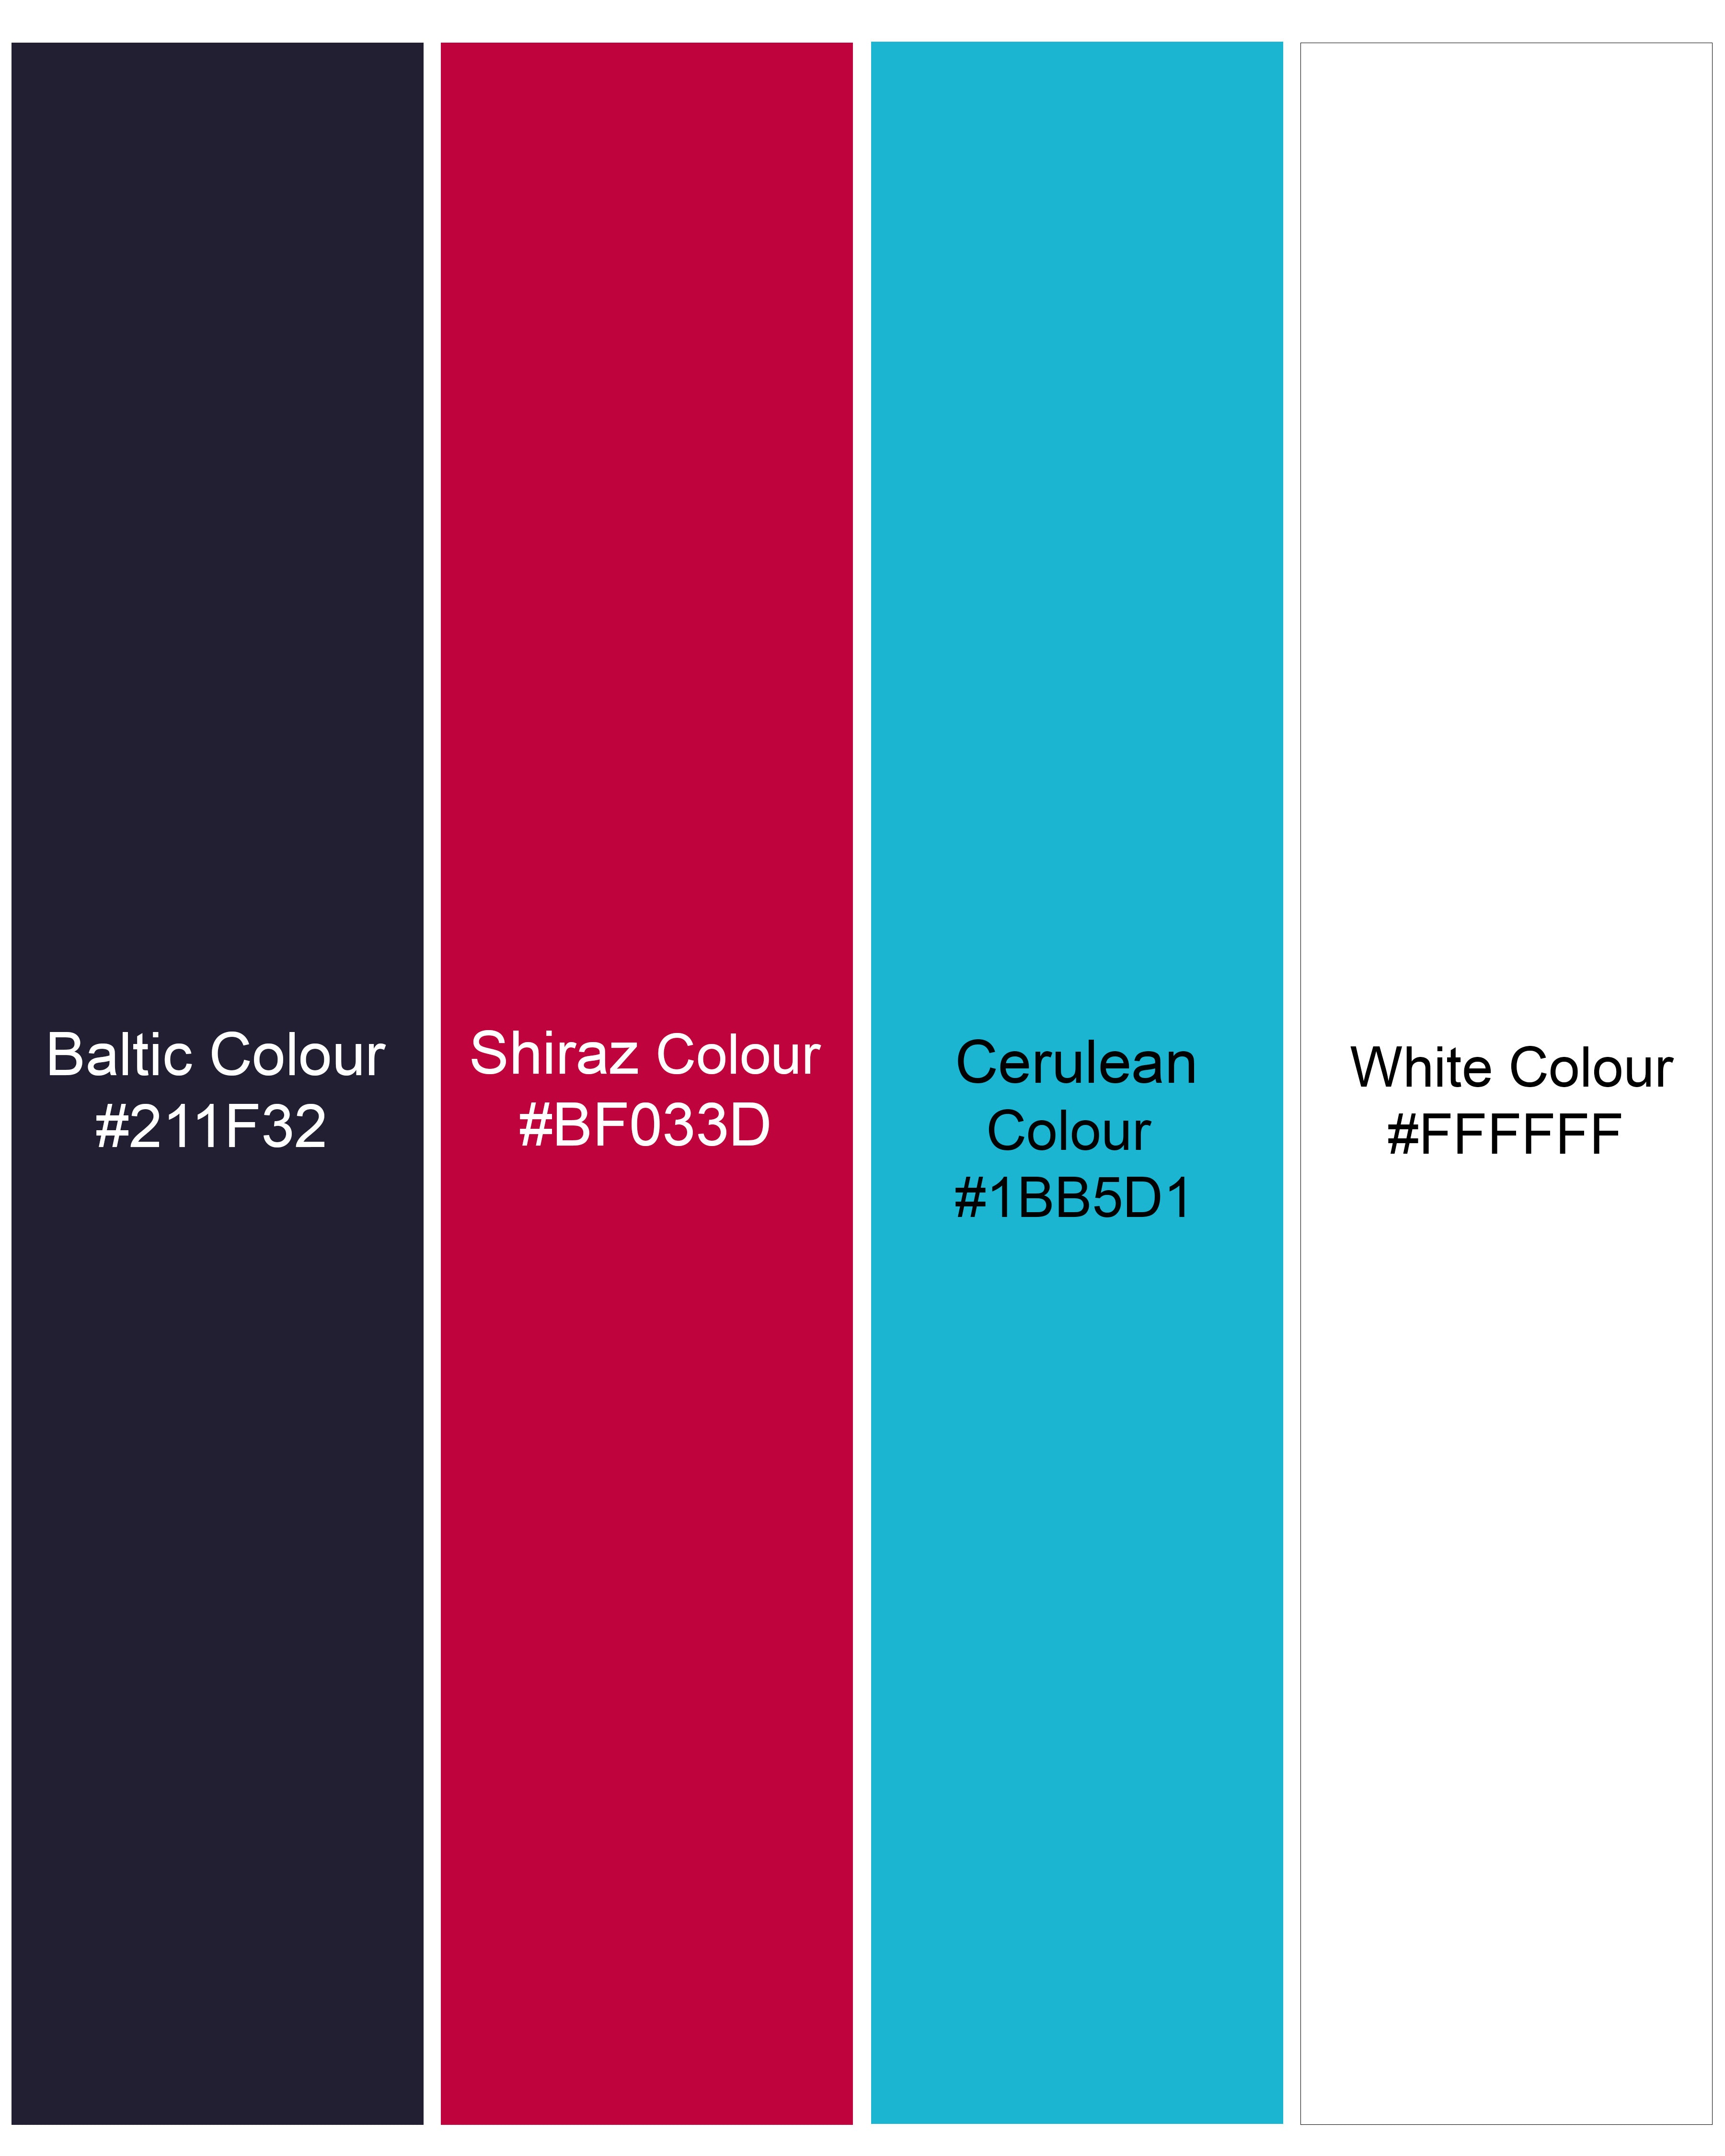 Baltic Navy Blue Multicolour Paisley Printed Super Soft Premium Cotton Shirt 9669-BLE-38, 9669-BLE-H-38, 9669-BLE-39, 9669-BLE-H-39, 9669-BLE-40, 9669-BLE-H-40, 9669-BLE-42, 9669-BLE-H-42, 9669-BLE-44, 9669-BLE-H-44, 9669-BLE-46, 9669-BLE-H-46, 9669-BLE-48, 9669-BLE-H-48, 9669-BLE-50, 9669-BLE-H-50, 9669-BLE-52, 9669-BLE-H-52